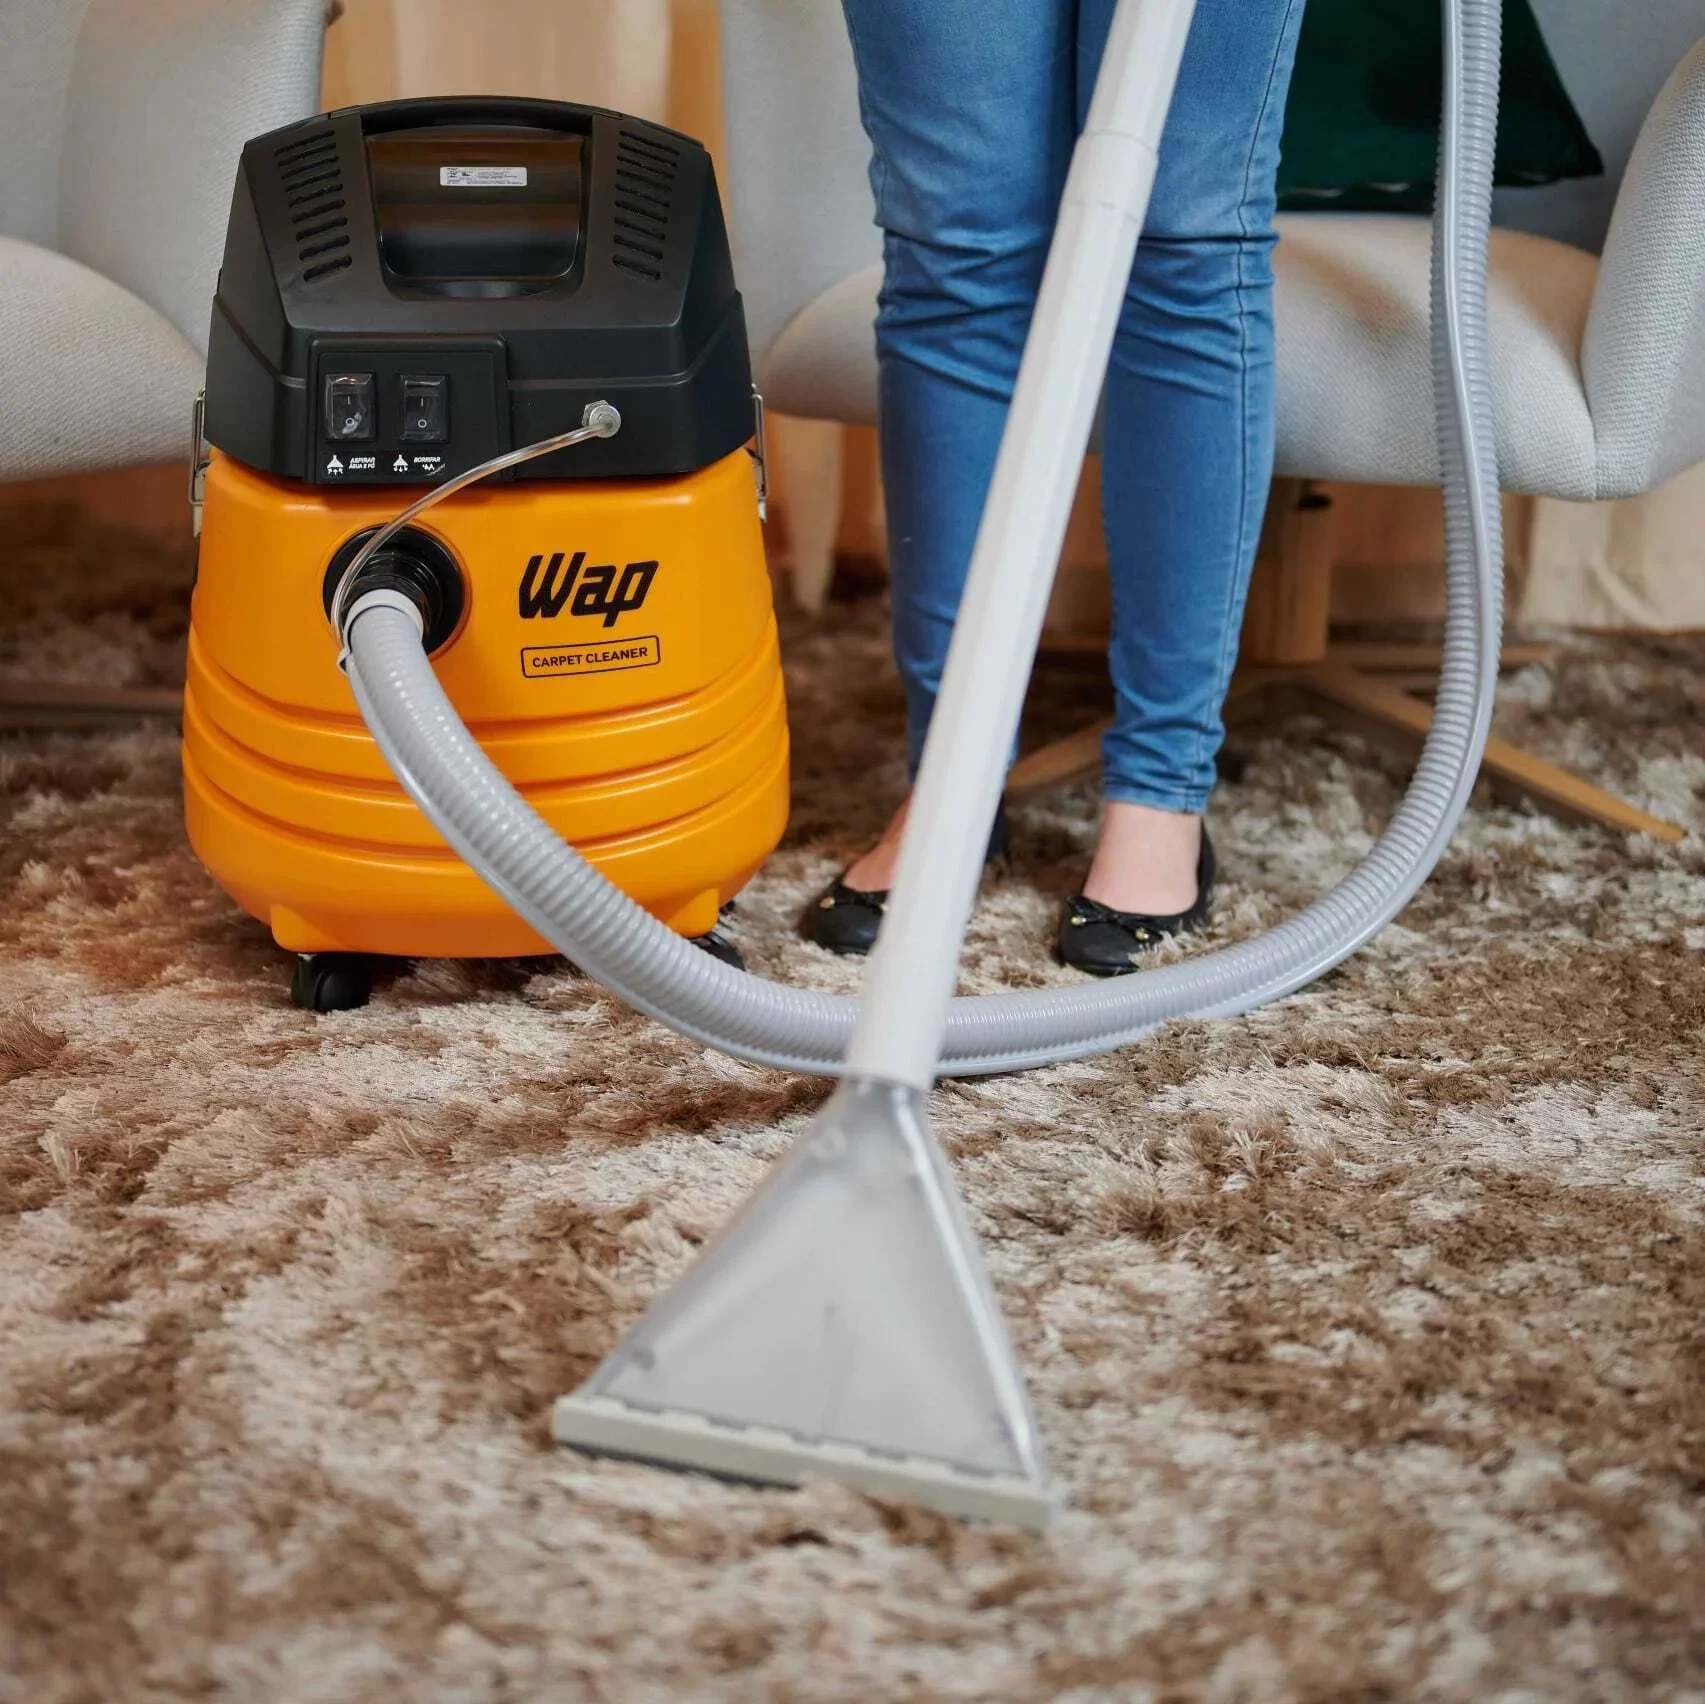 Extratora de Limpeza WAP Carpet Cleaner 1600W Uso Profissional Bocal de Sopro, Borrifa e Aspira 127V Amarelo/Preto - 13